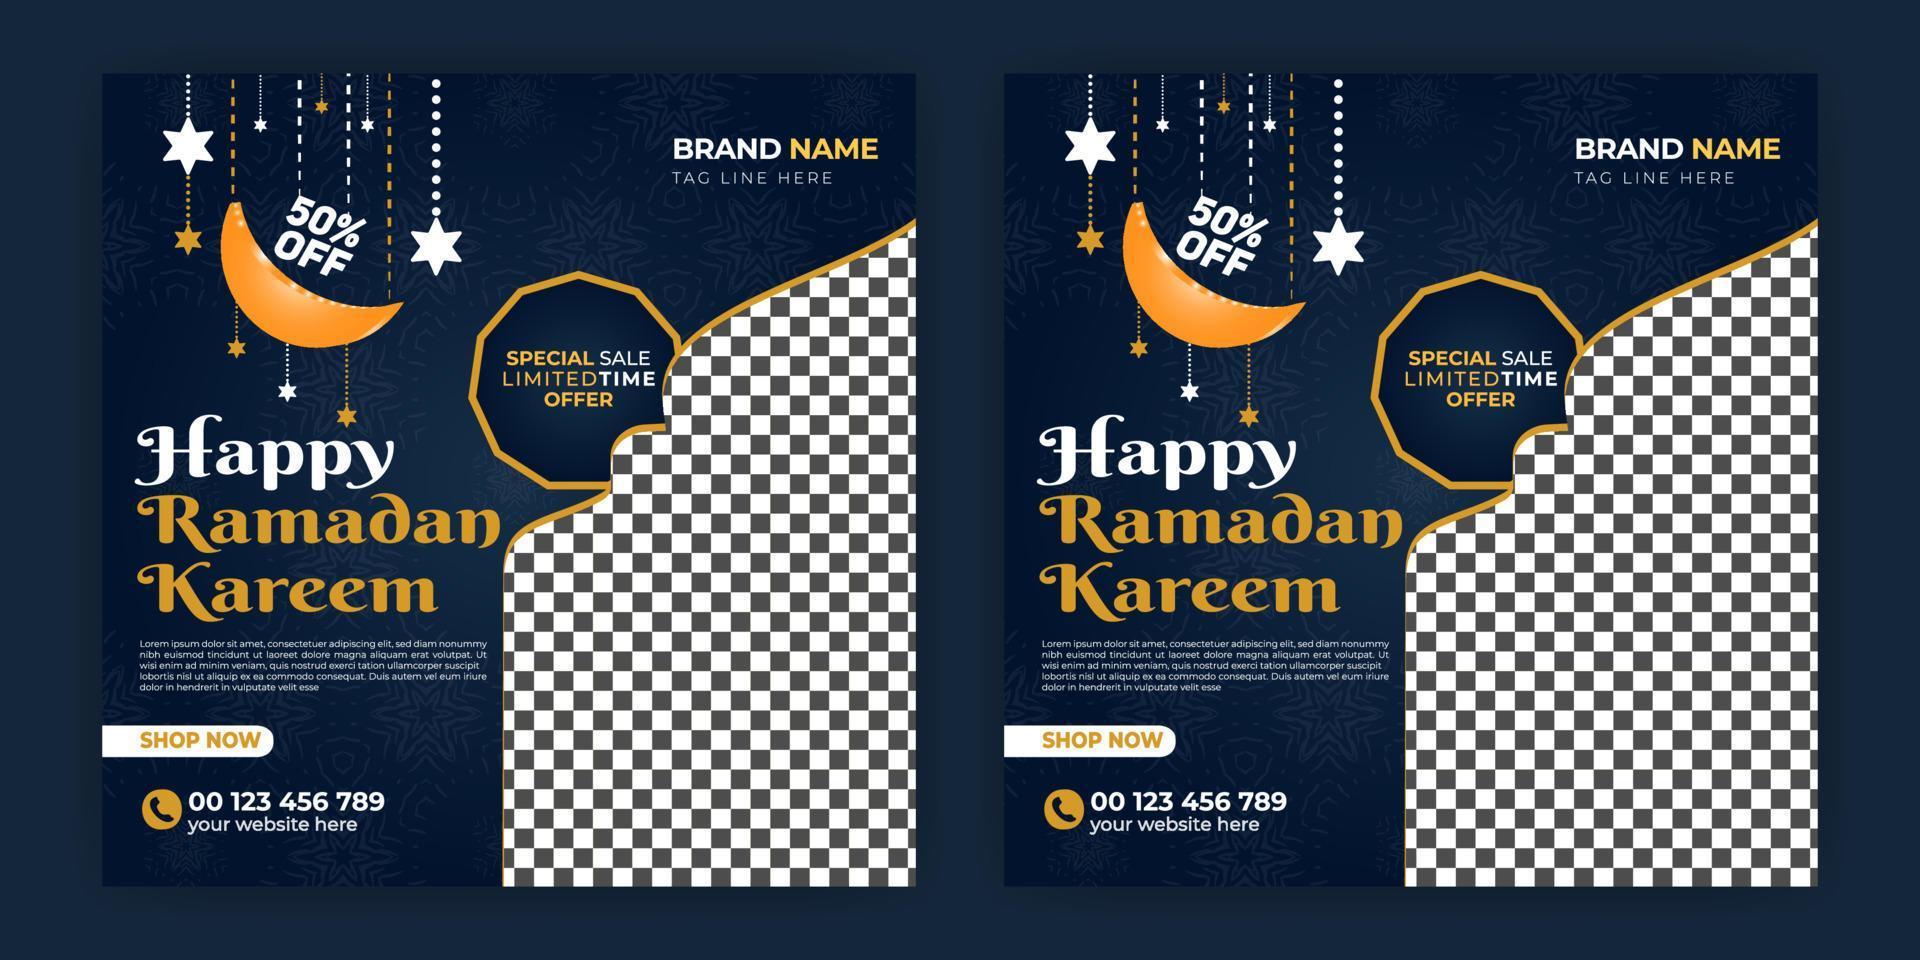 Ramadan Kareem Social Media Post Mandala Design Web Banner Template Free Download vector